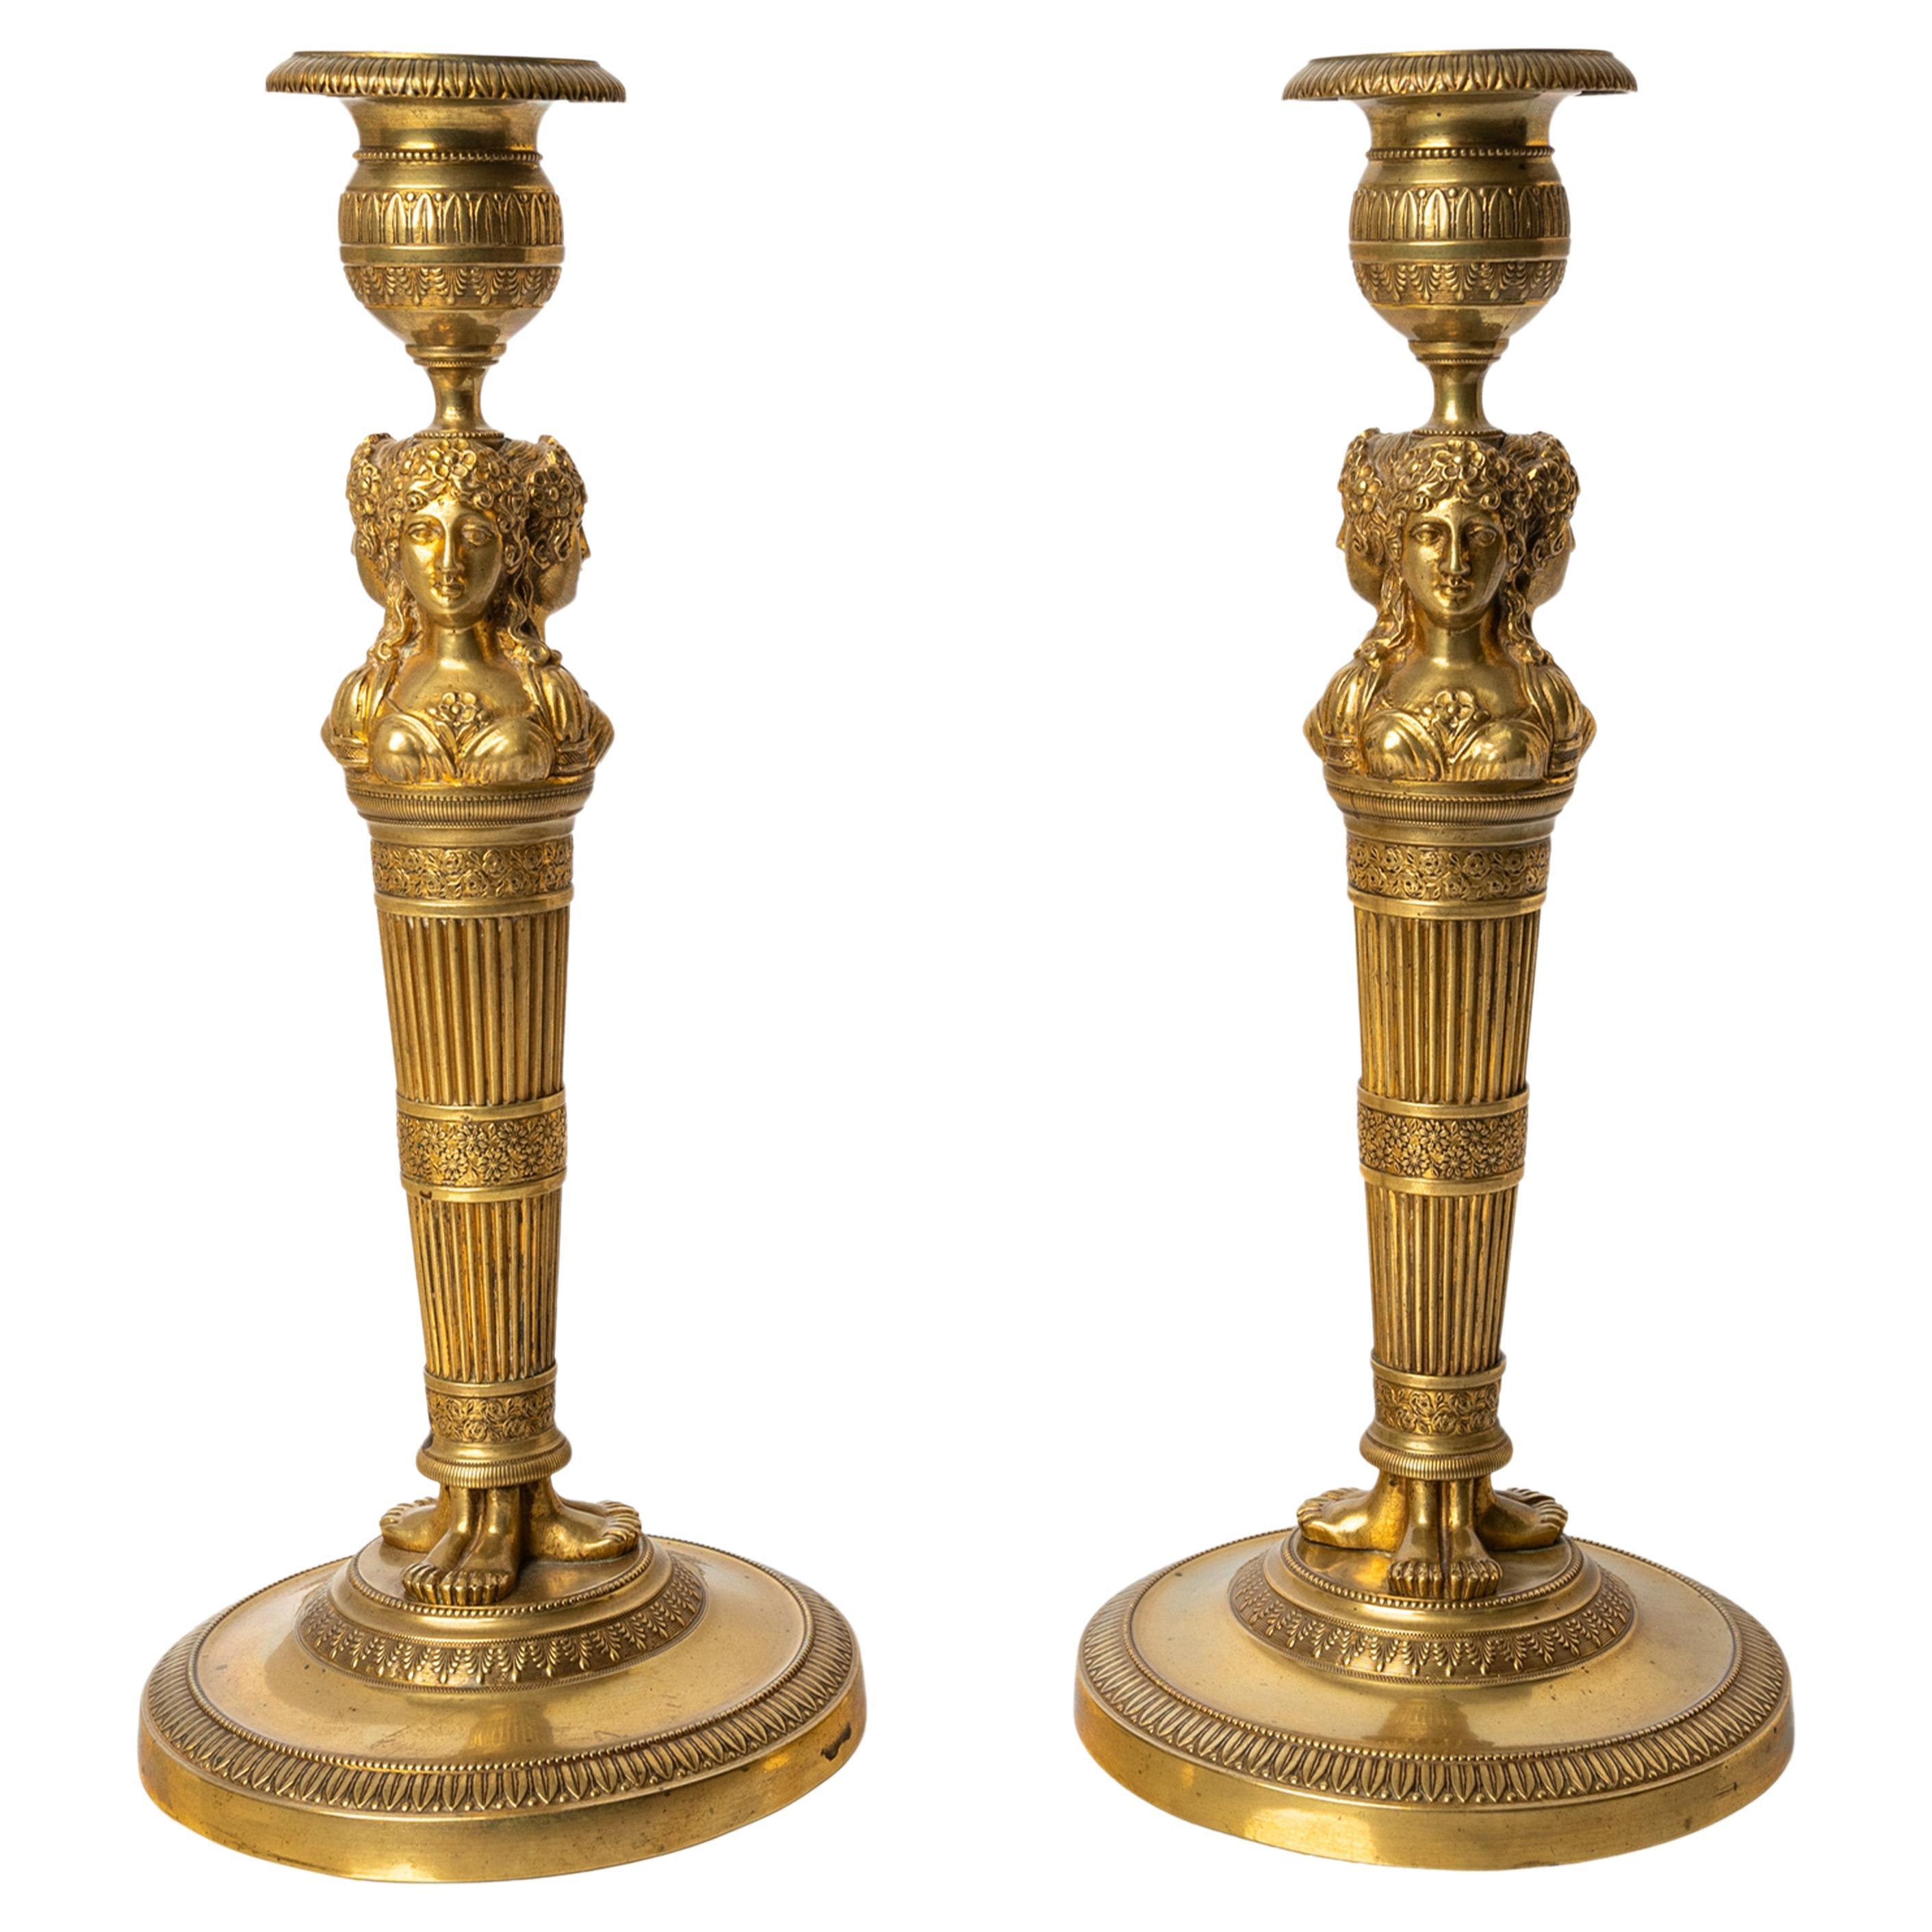 Paire de chandeliers anciens en bronze doré de l'Empire français du début du 19e siècle